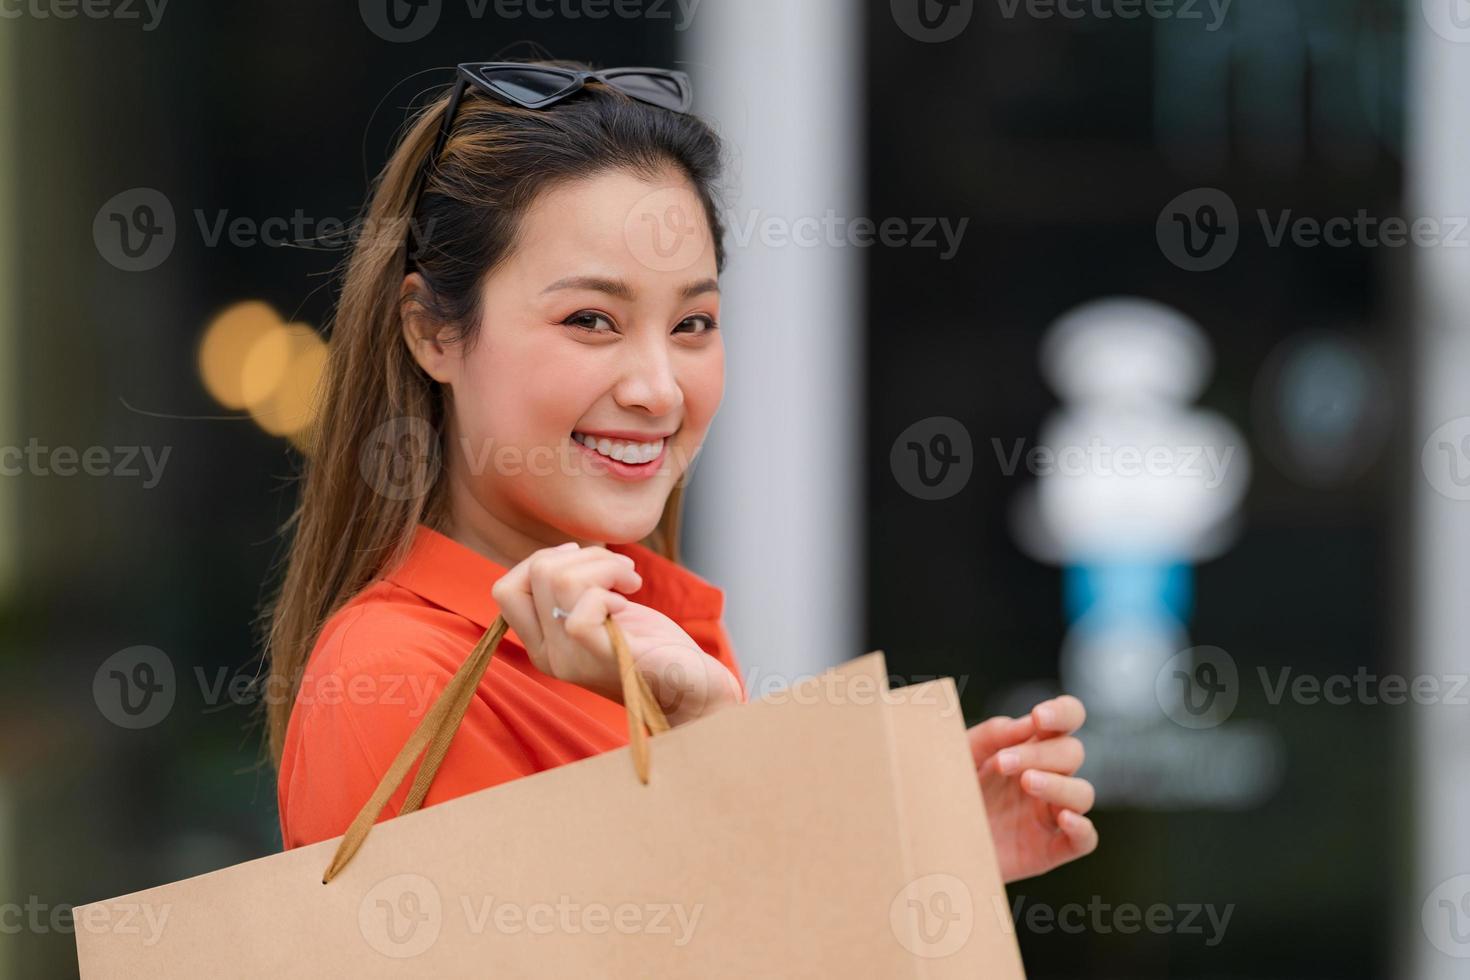 portrait en plein air de femme heureuse tenant des sacs à provisions photo